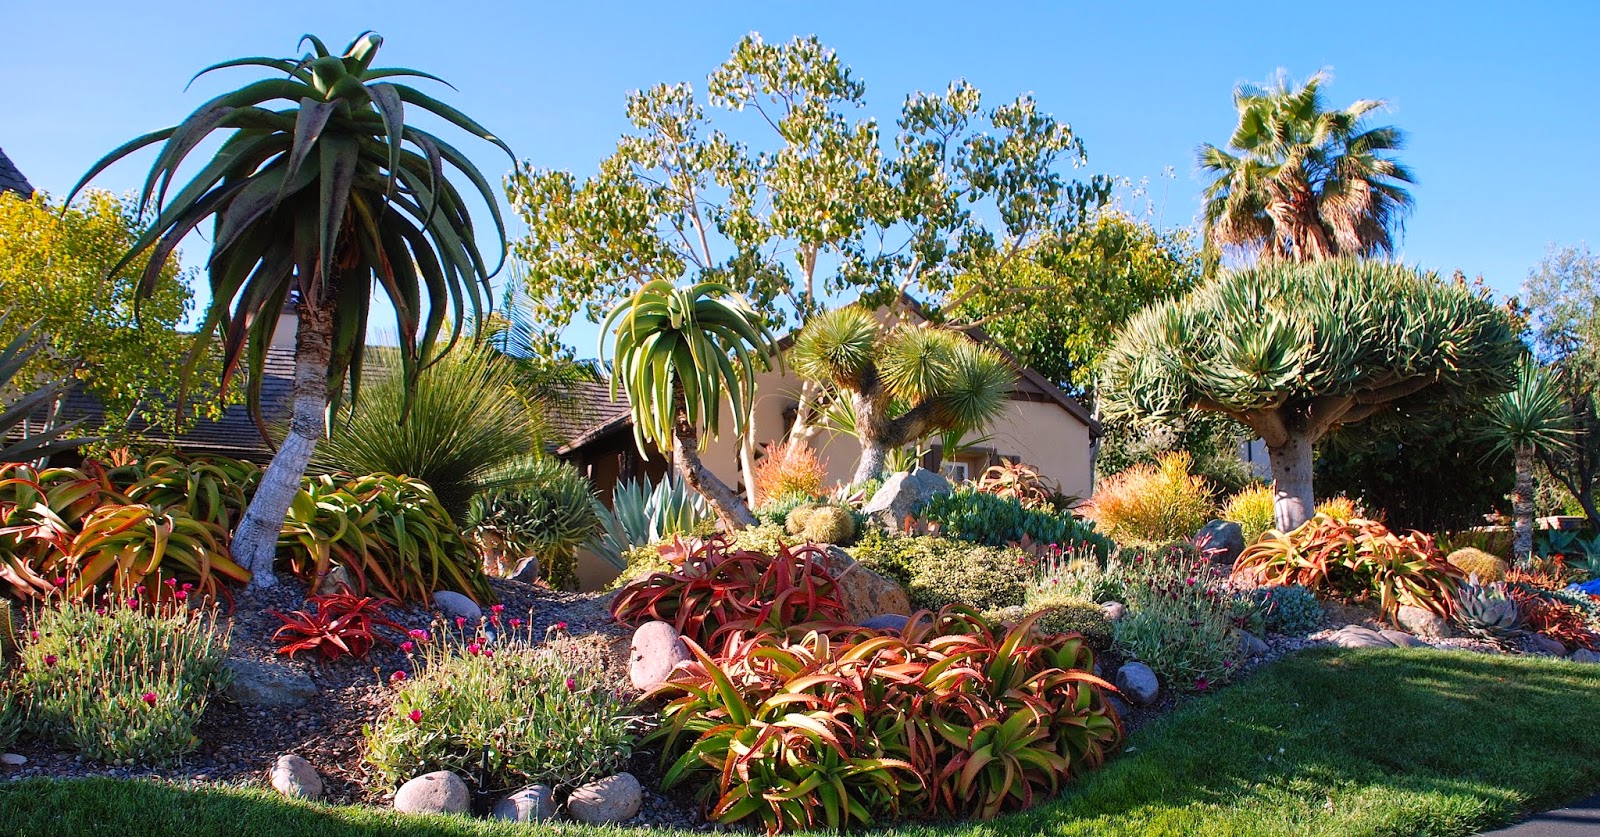 Deeter Buckner Design Llc New Photos Of A Stunning Mature Garden